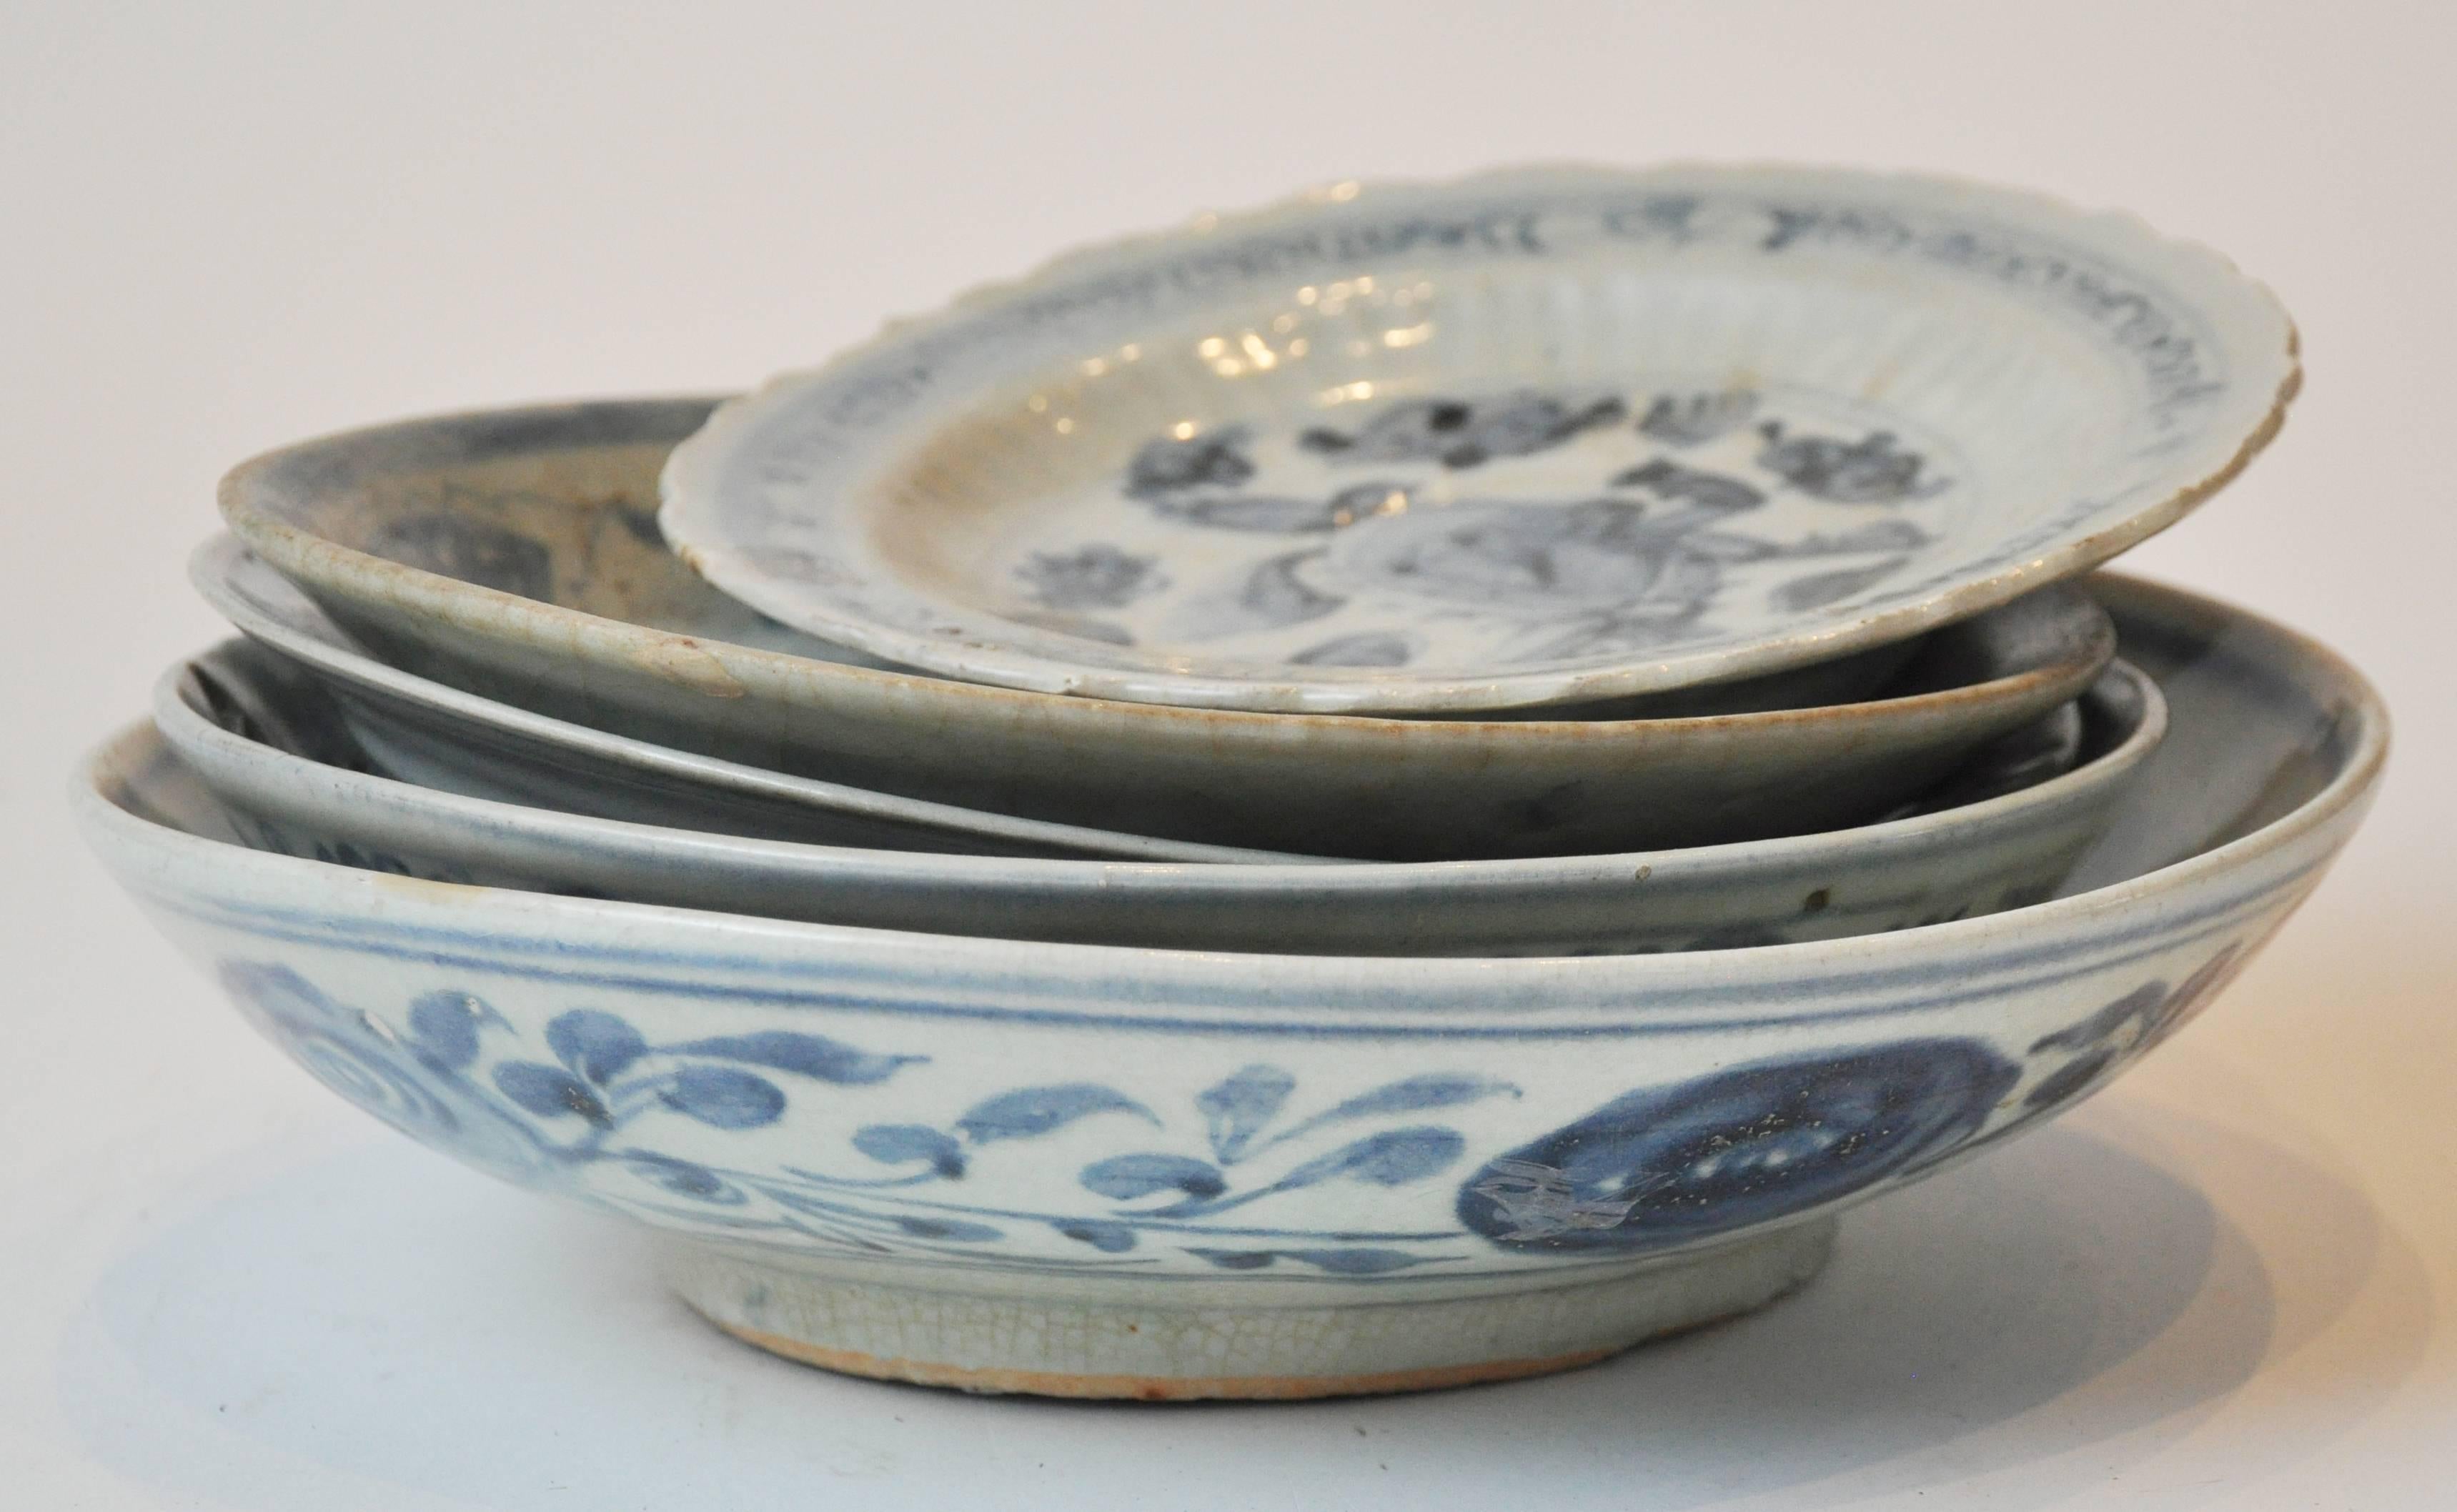 Sammlung von chinesischem Porzellan aus Blau und Knochen aus dem 19. Jahrhundert. Die Collection'S enthält sowohl wichtige als auch weniger wichtige Stücke.  Alle haben traditionelle chinesische Motive und einige mit Celadon-Farbgebung.  Als